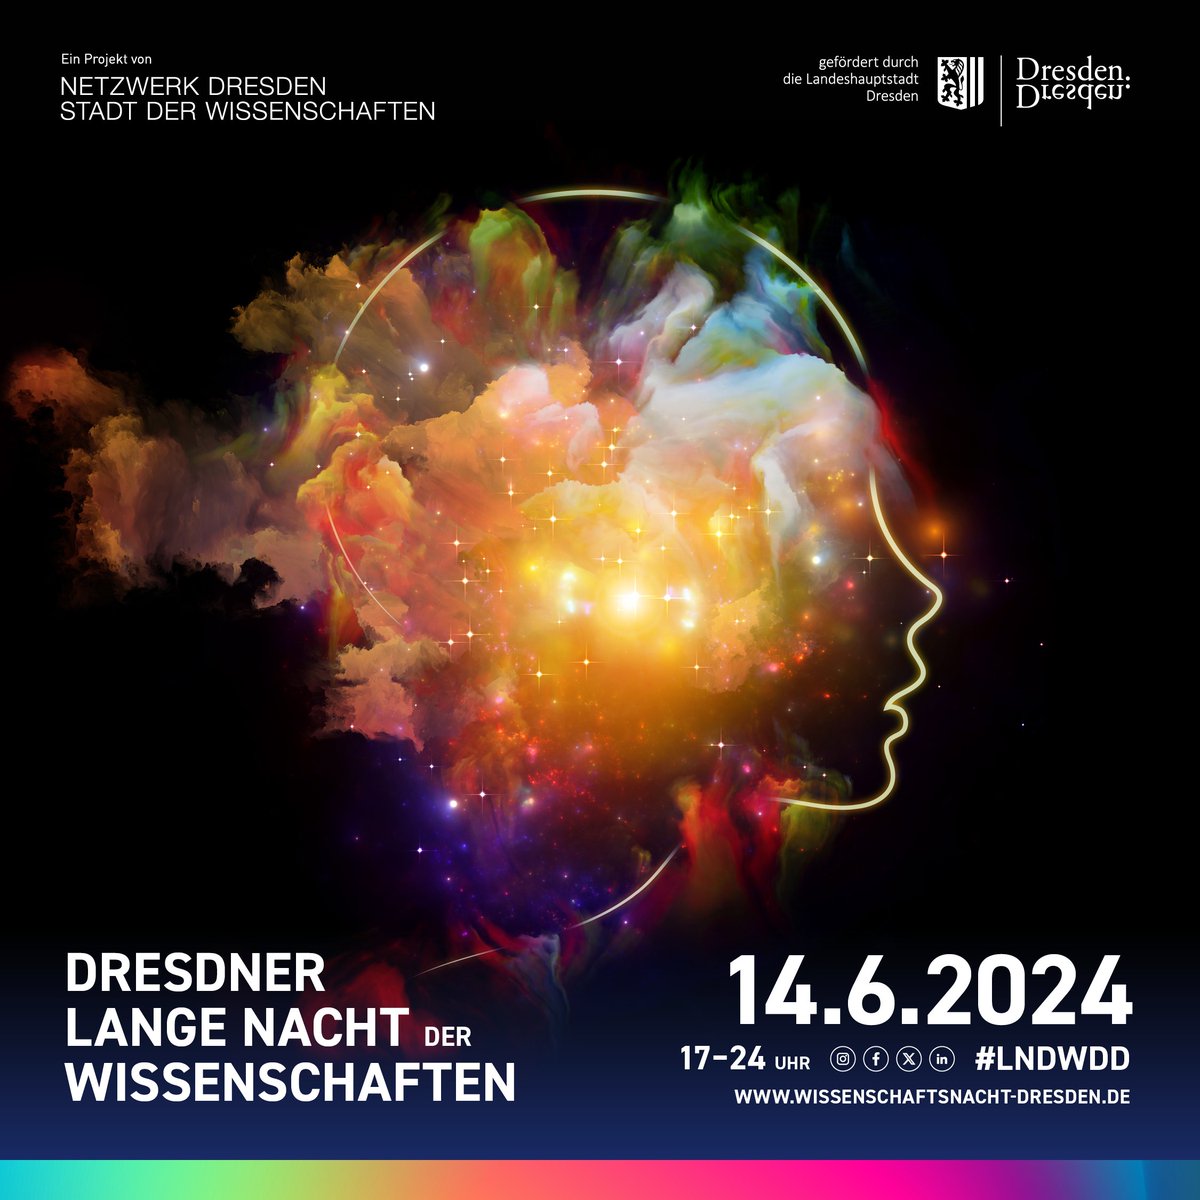 Der Countdown läuft: In nur 3 Monaten, am 14.6., findet in Dresden wieder die #LNDWDD statt. Wir sind in diesem Jahr zum 1. Mal dabei 🥳 und freuen uns auf zahlreiche Besucher:innen im Zelleschen Weg 17. Es warten Vorträge, Workshop, Bibliotheksführungen, Mitmachaktionen auf euch